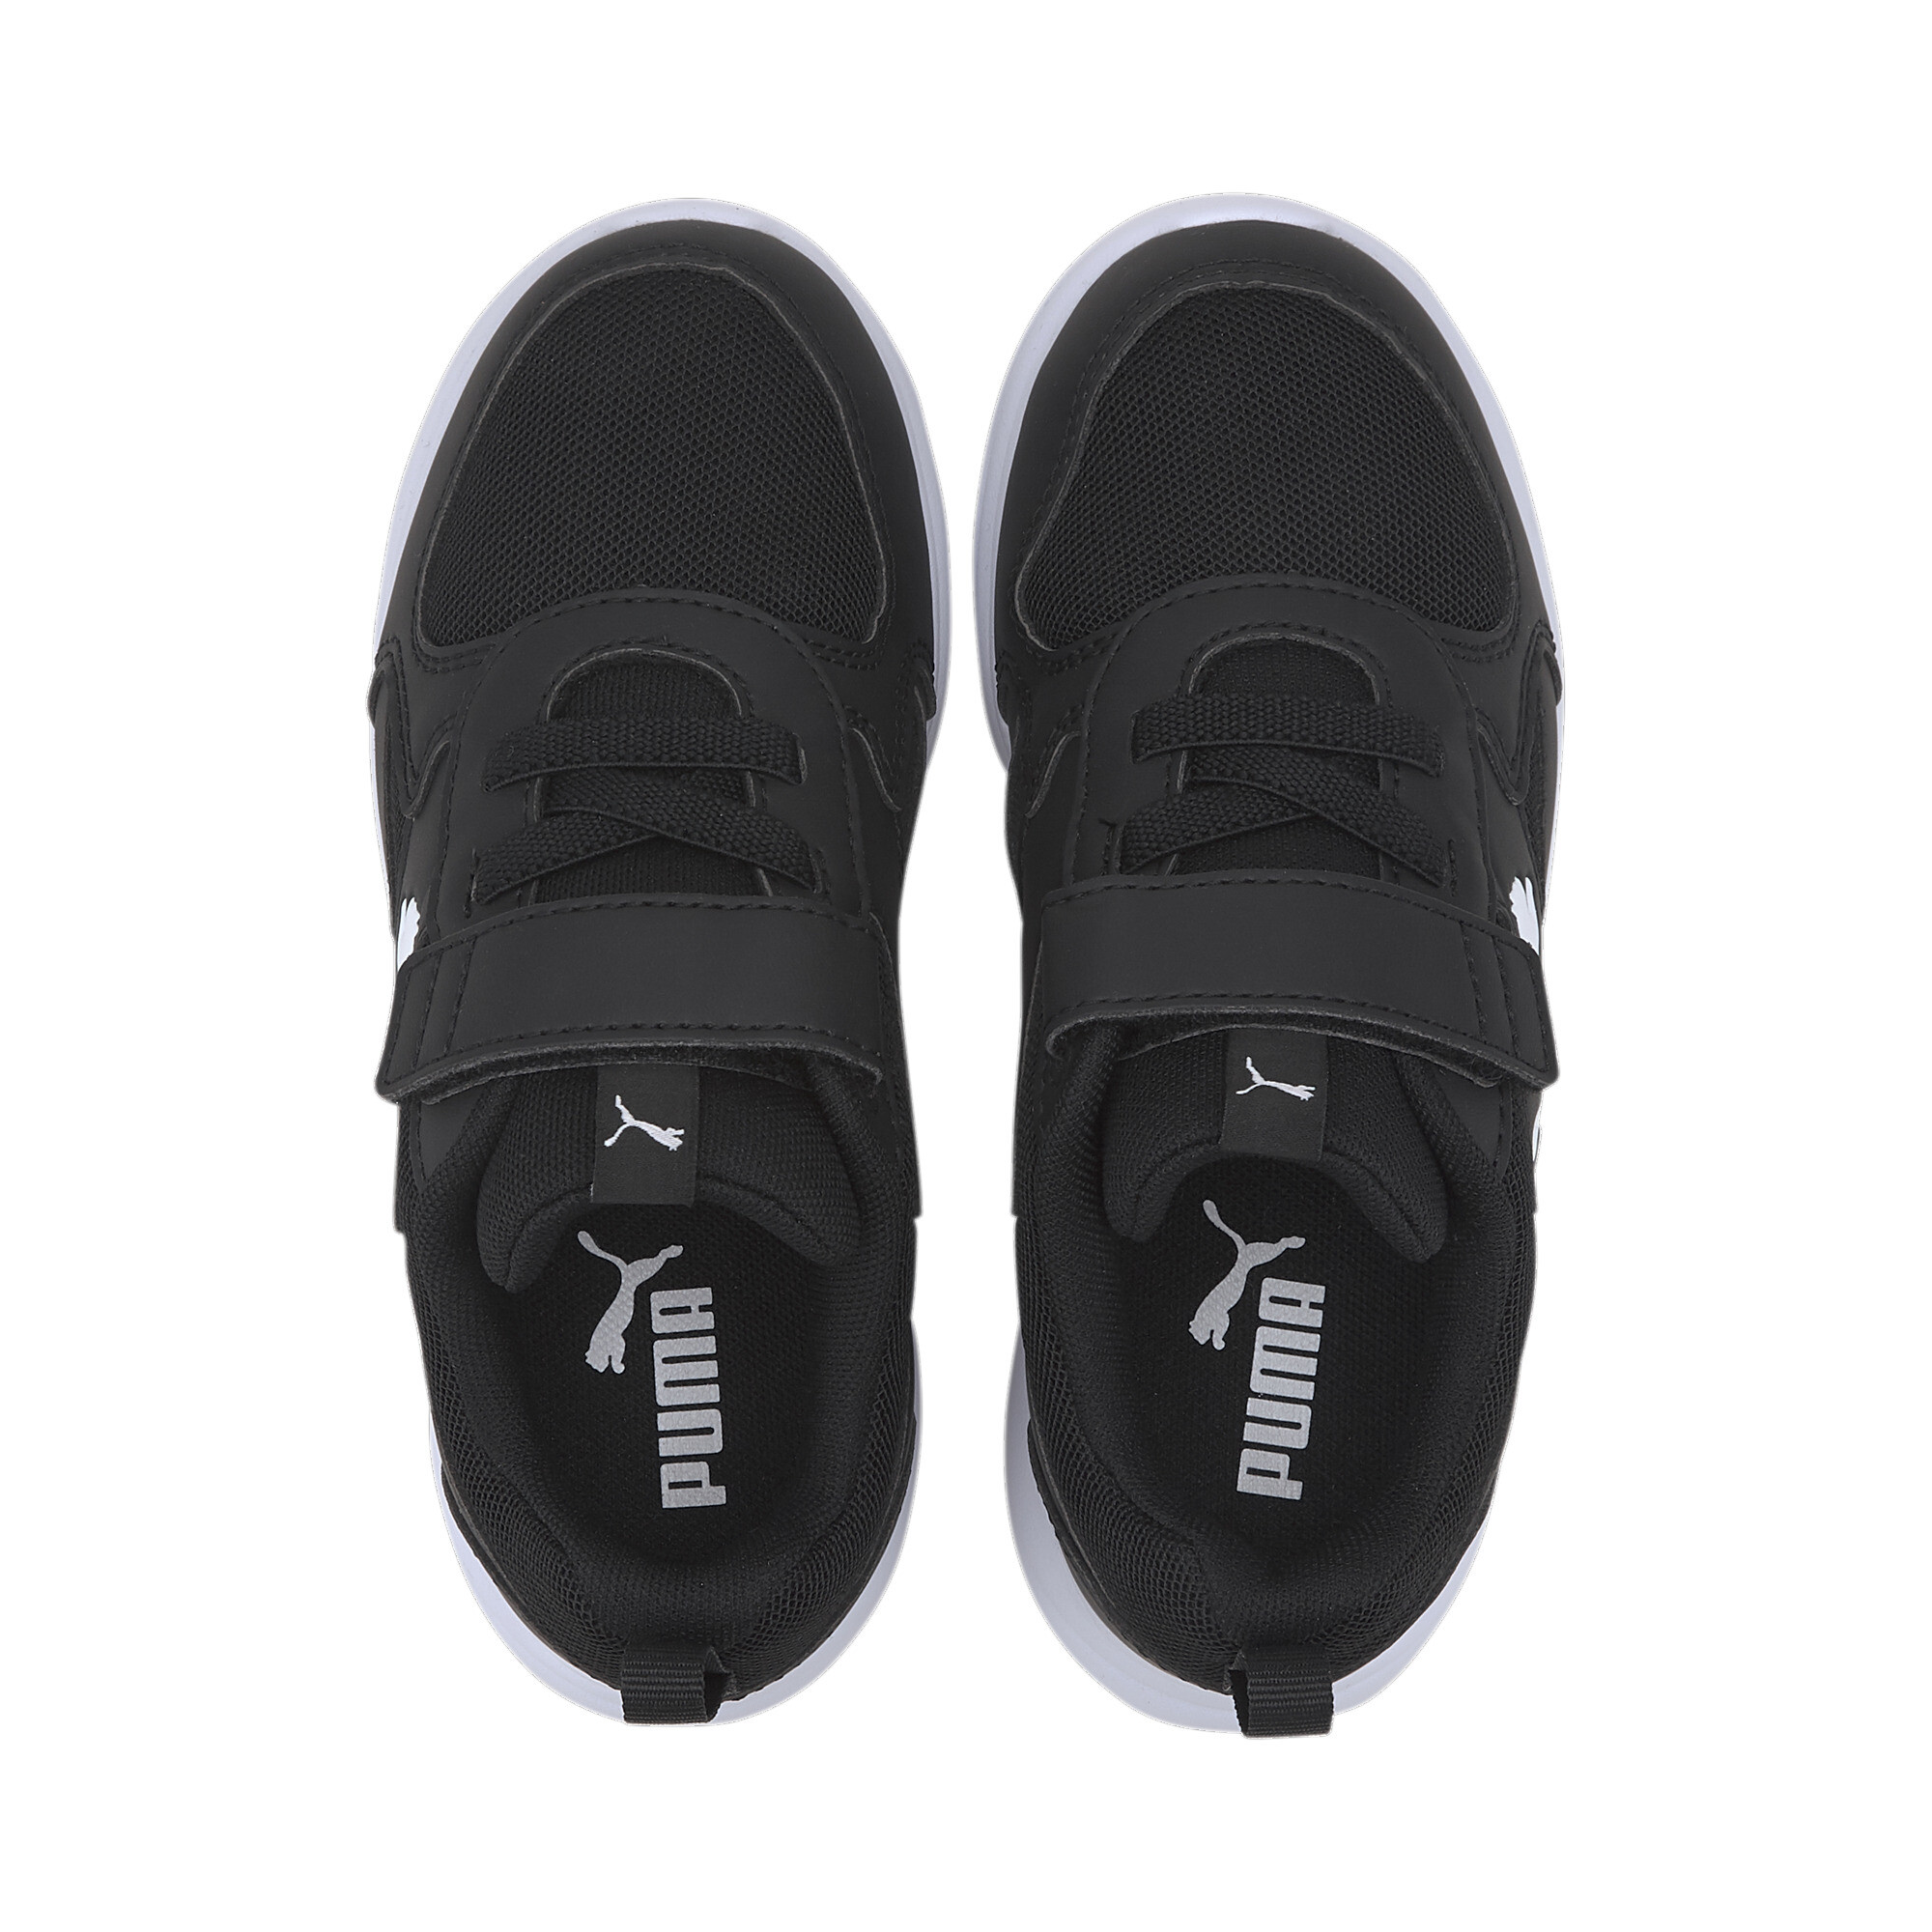 Kids' PUMA Fun Racer Sneakers In Black, Size EU 30